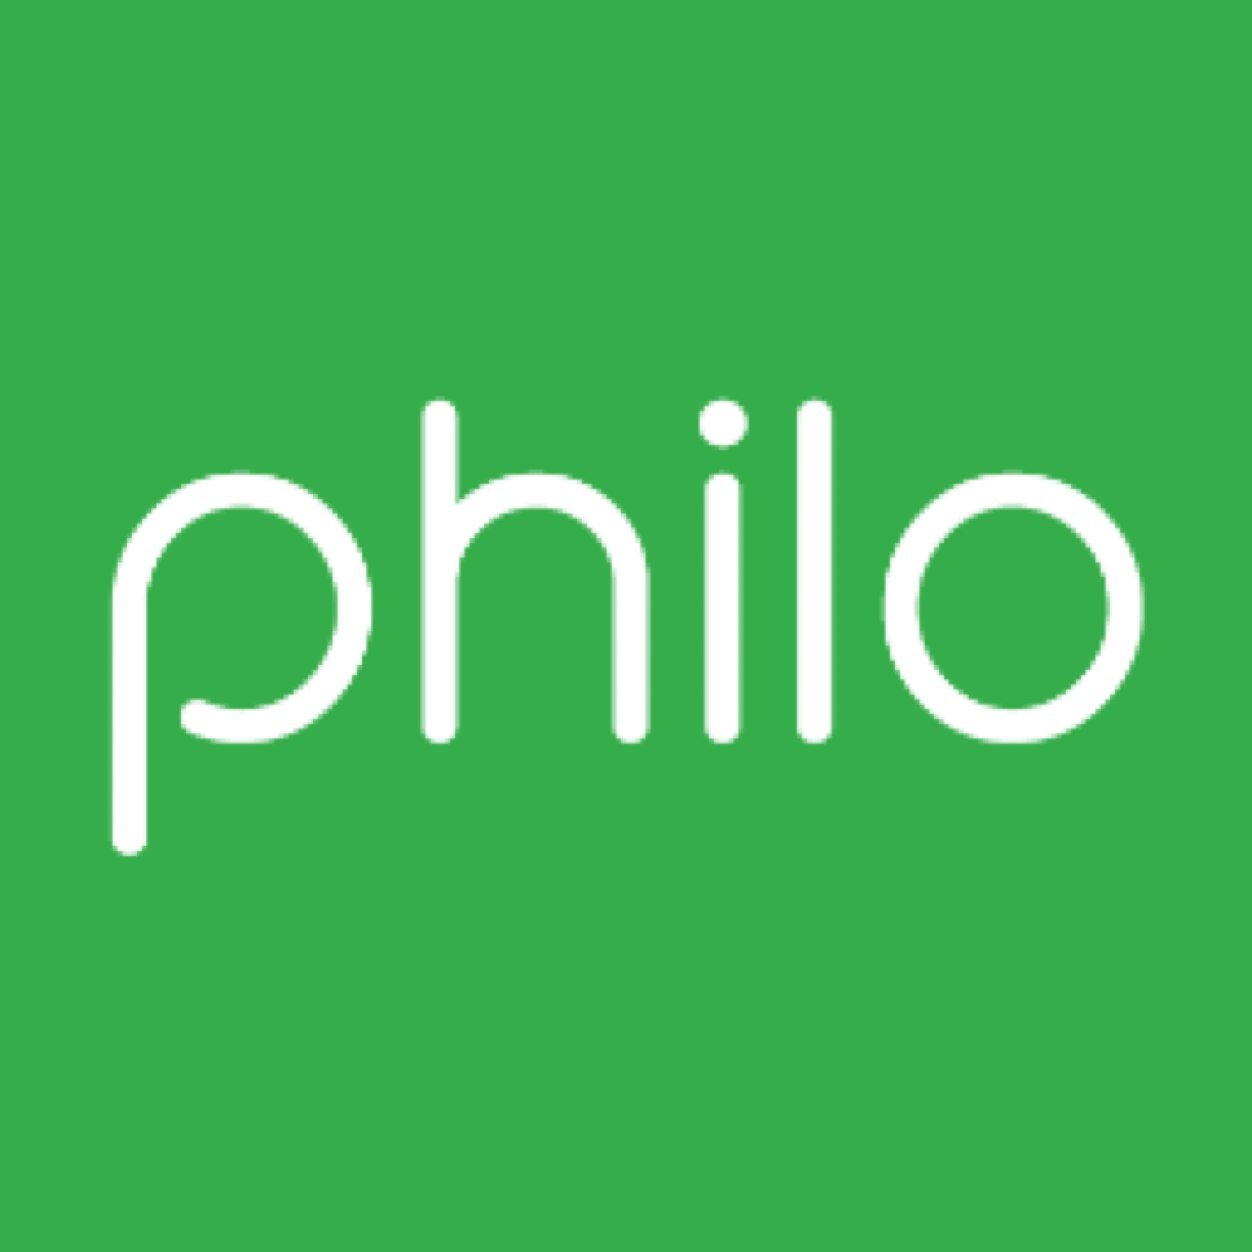 philo